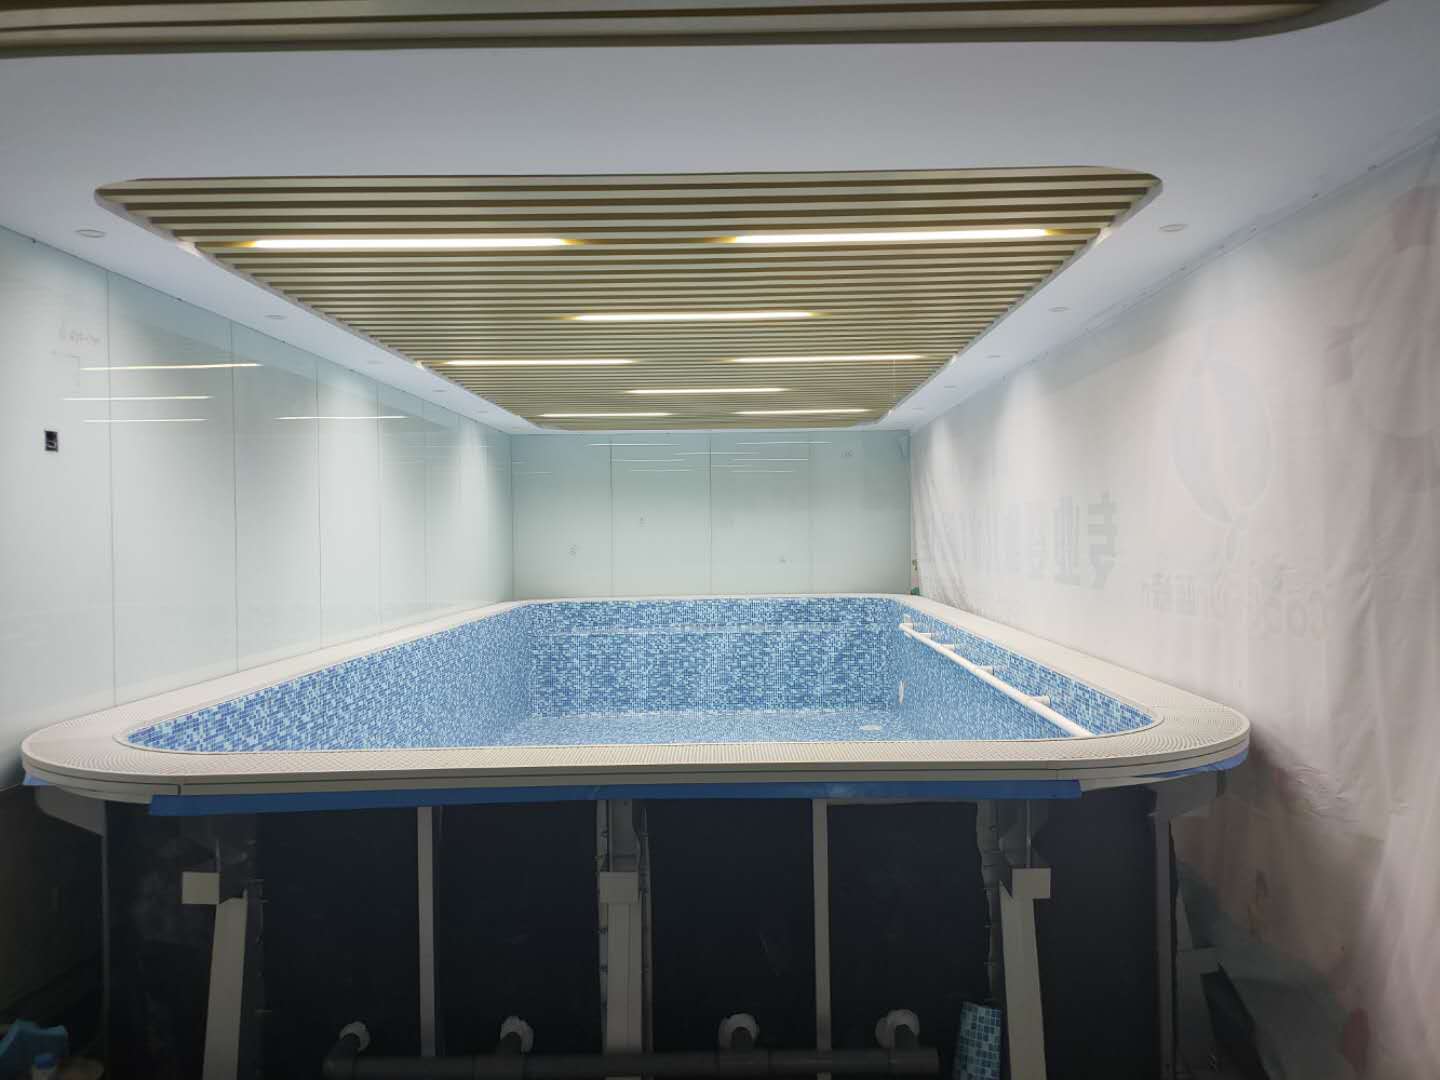 上海水育早教钢结构游泳池项目8米×4米